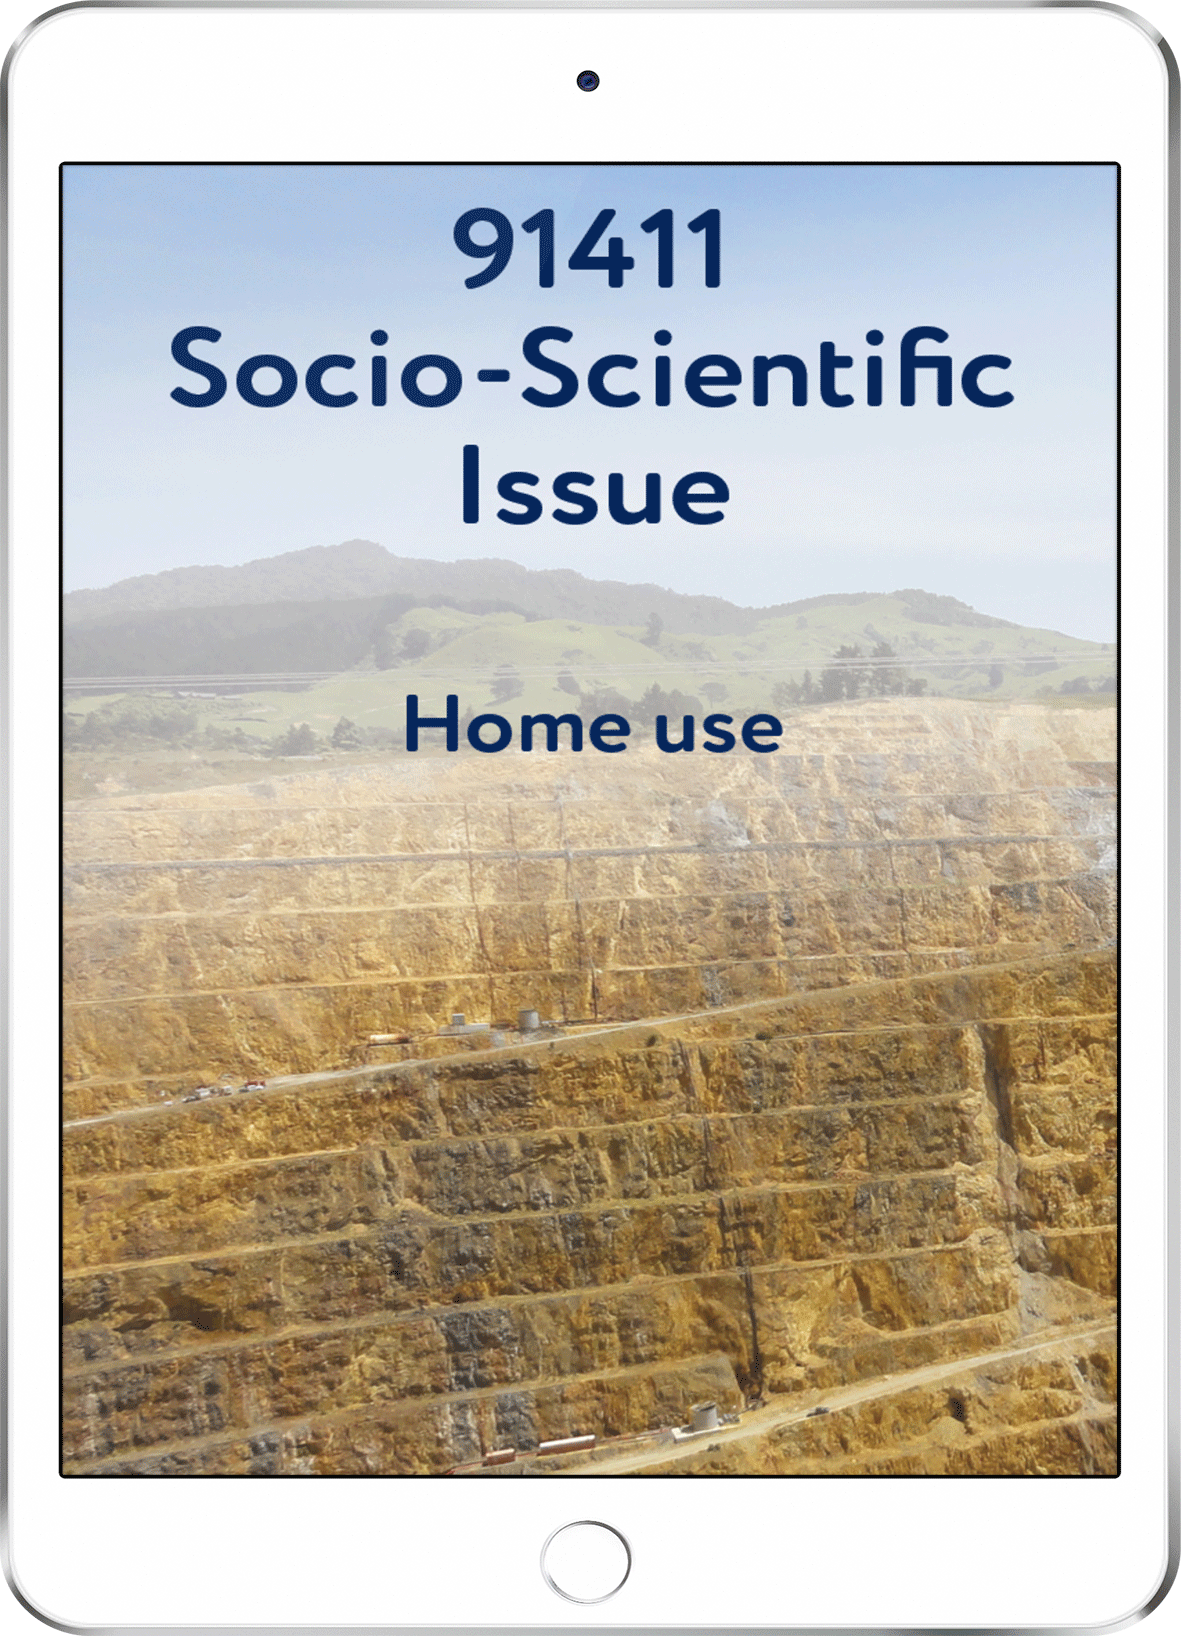 91411 Socio-Scientific Issue - Home Use